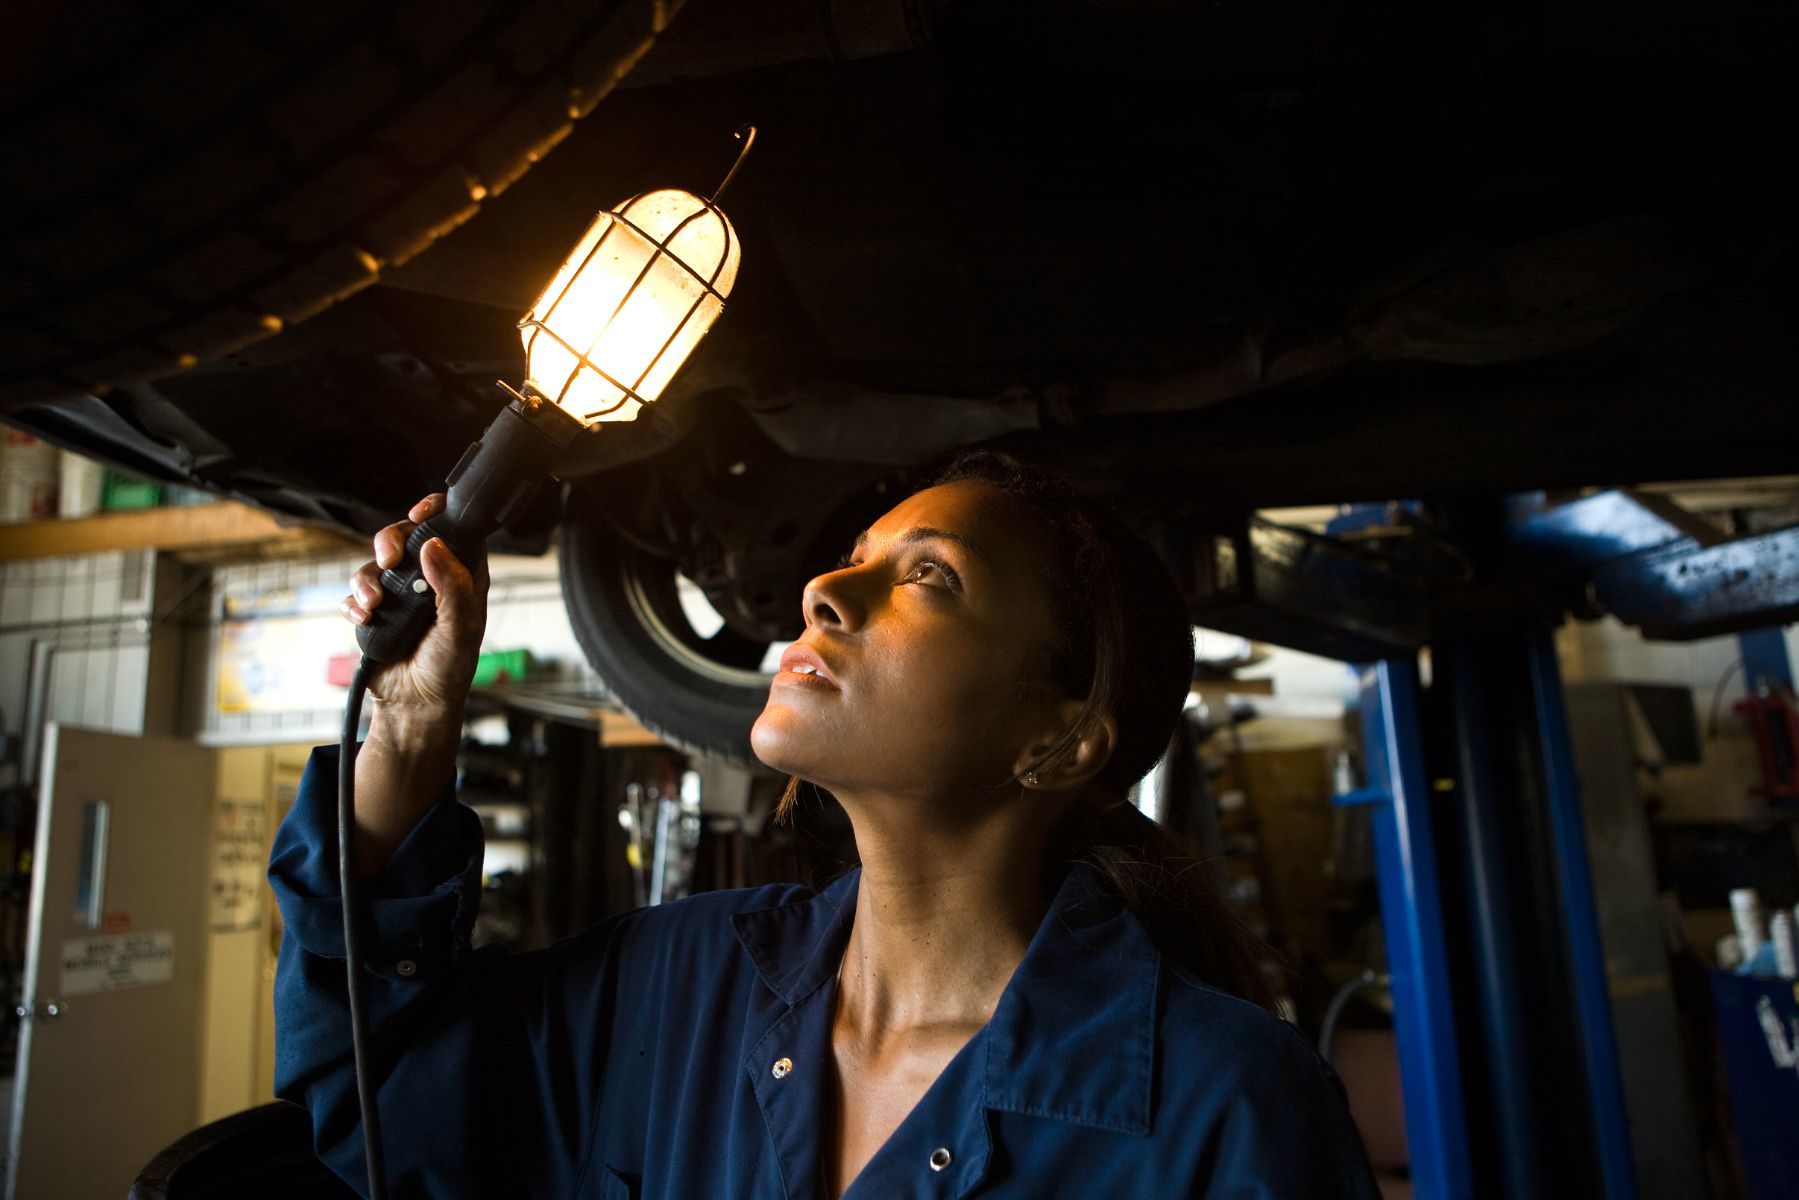 mécanicienne observant avec une lampe le dessous d'un véhicule en réparation